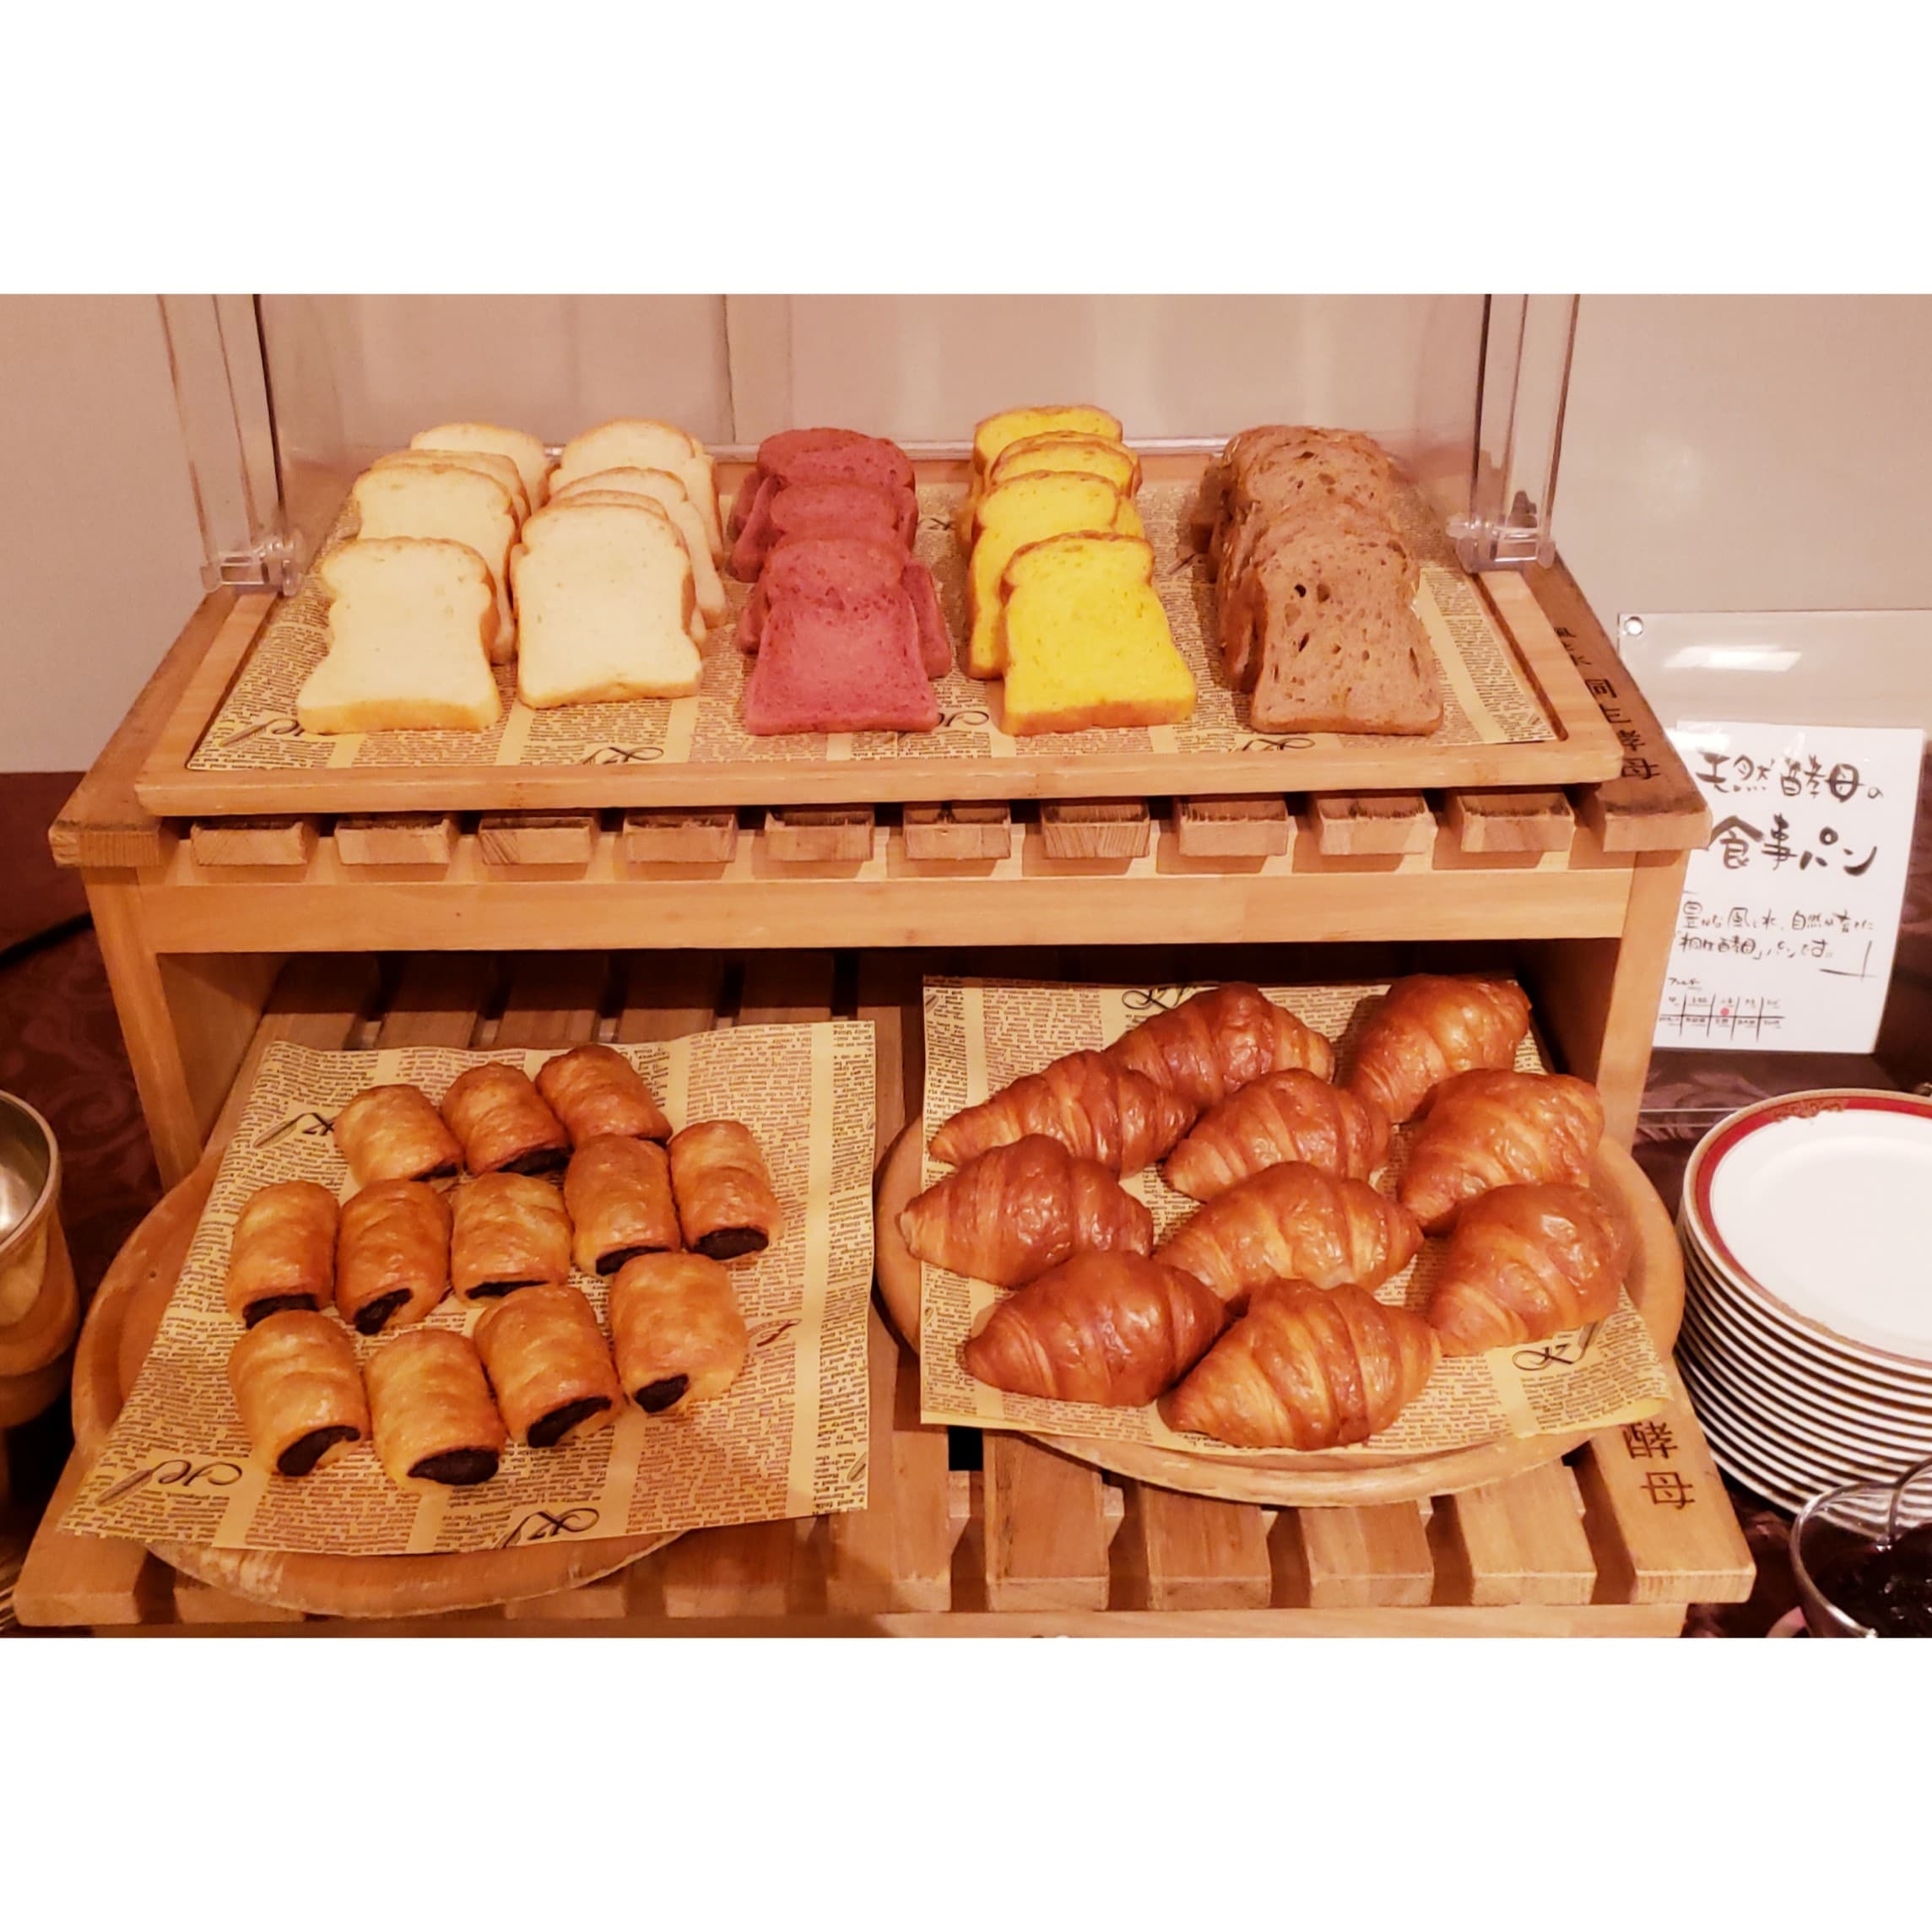 [Breakfast] Bread